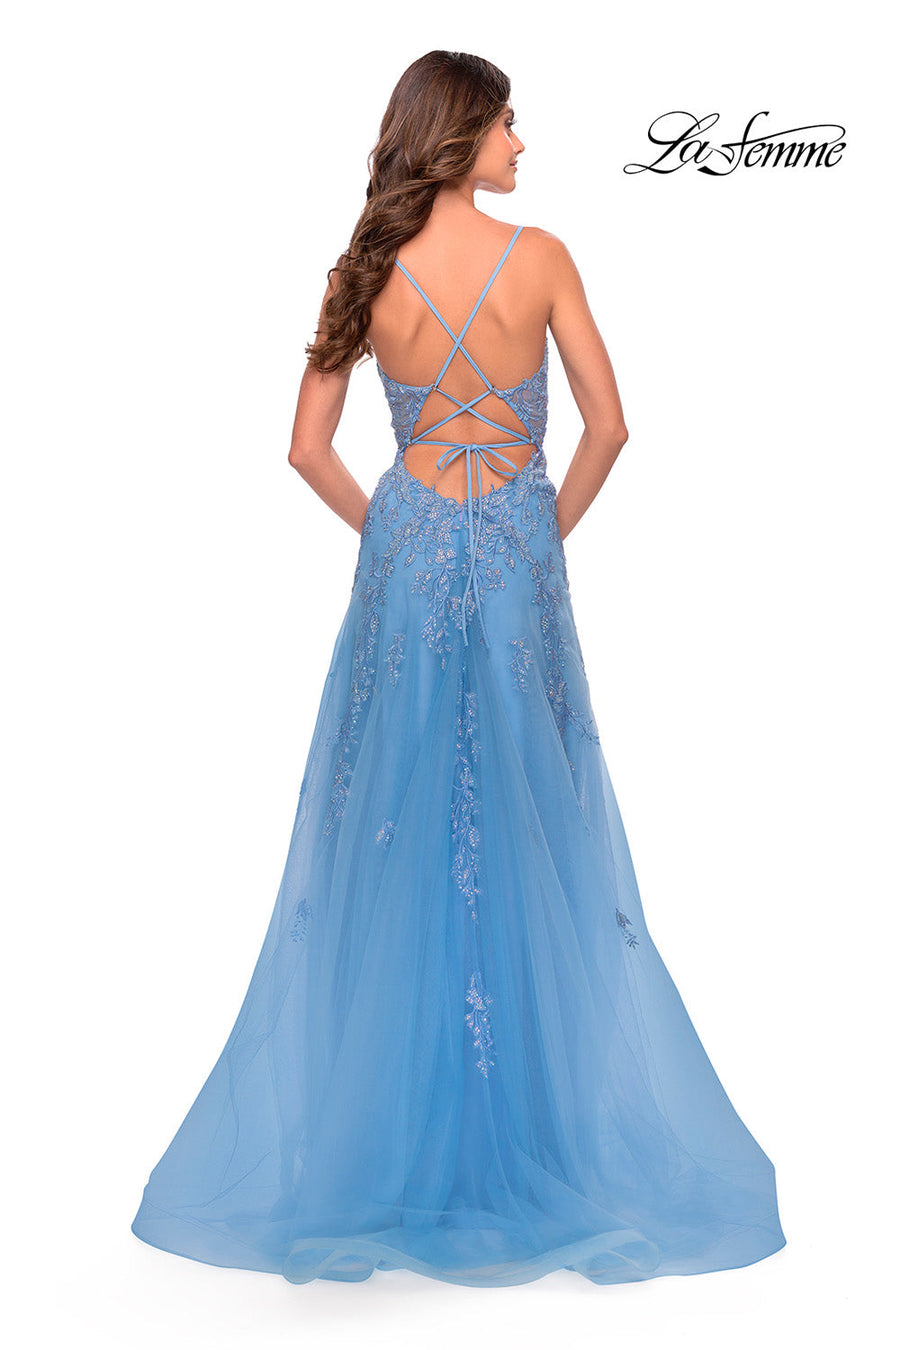 La Femme 31284 prom dress images.  La Femme 31284 is available in these colors: Cloud Blue, Royal Purple.